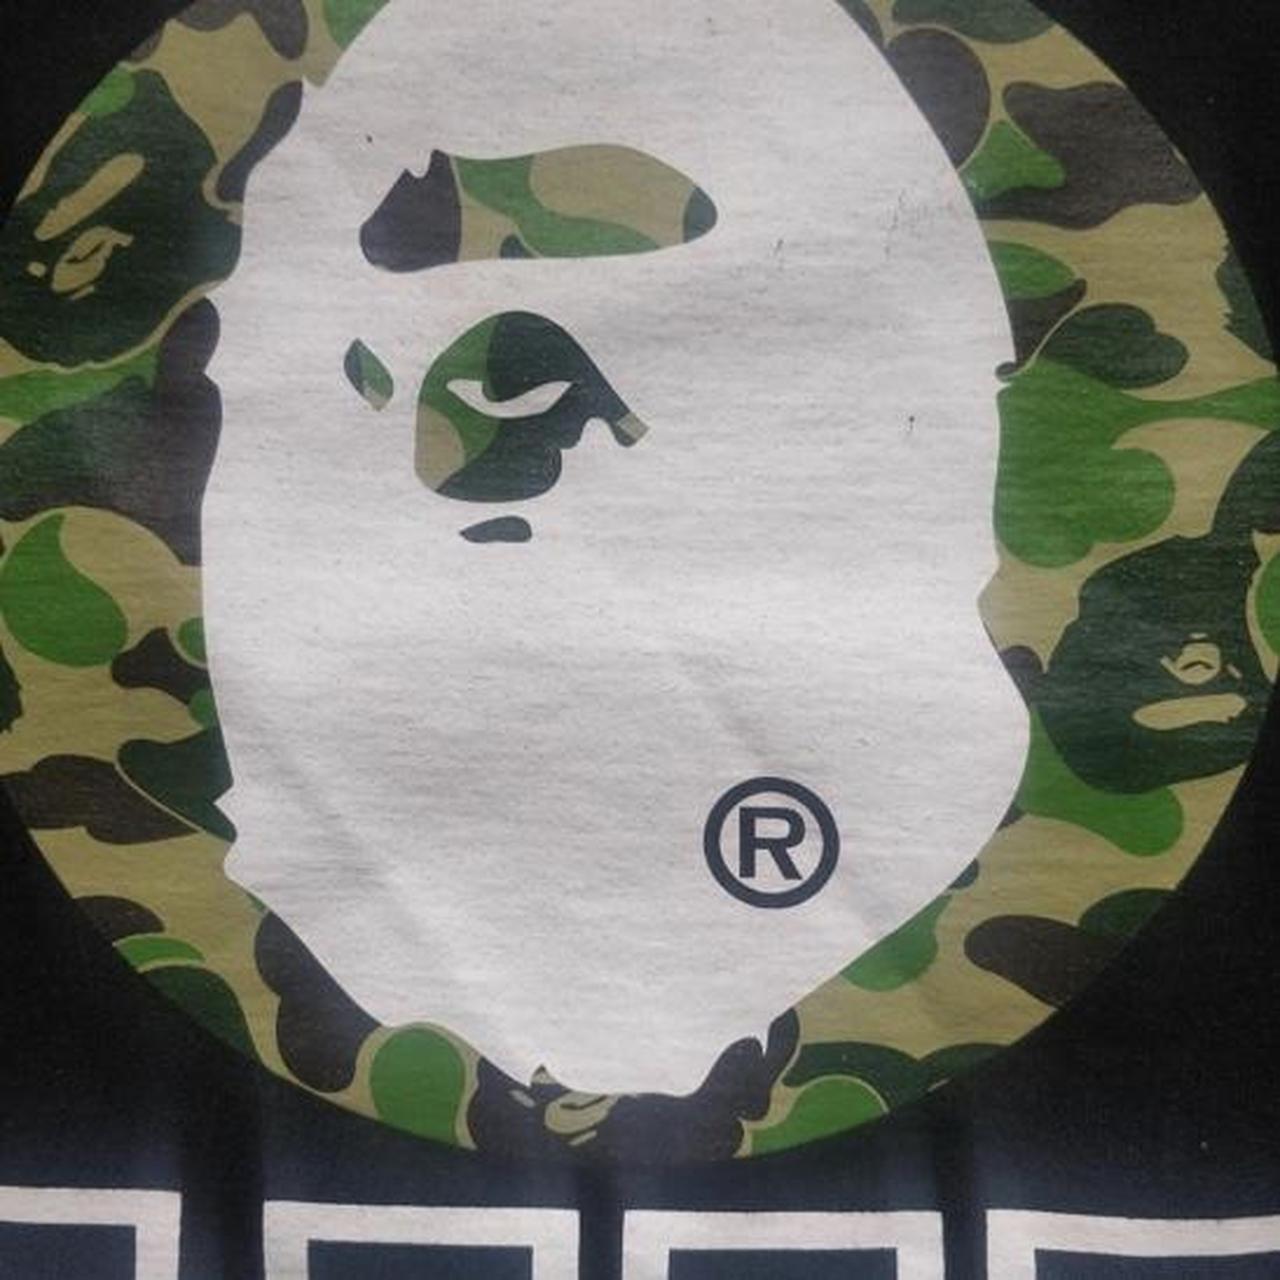 Bape 'Ape shall never kill ape' Camo T-shirt Size:... - Depop